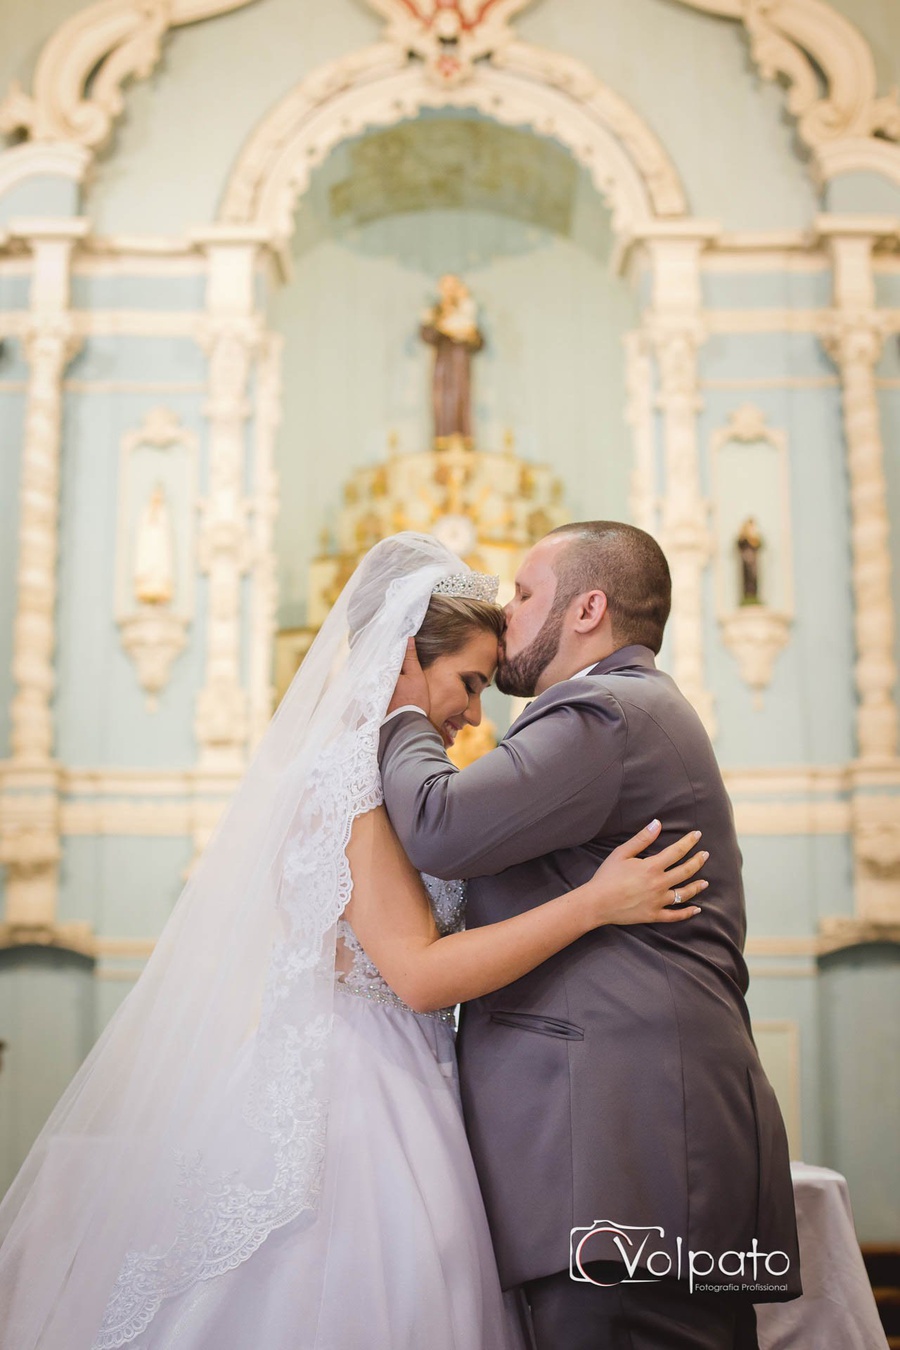 Casamento | Priscila & Leonardo 